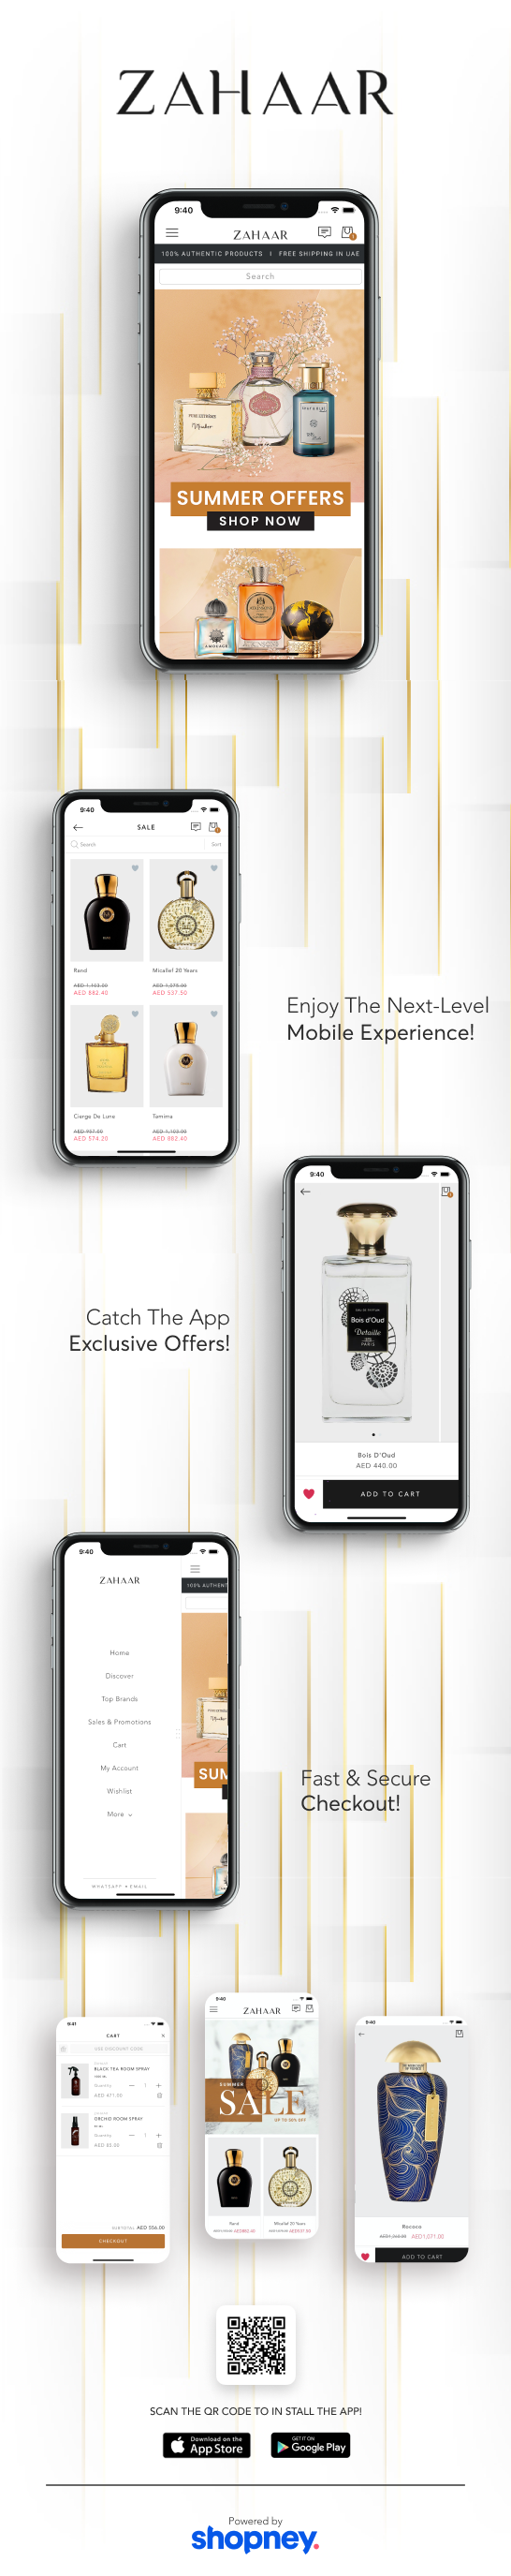 the mobile app design of Zahaar app